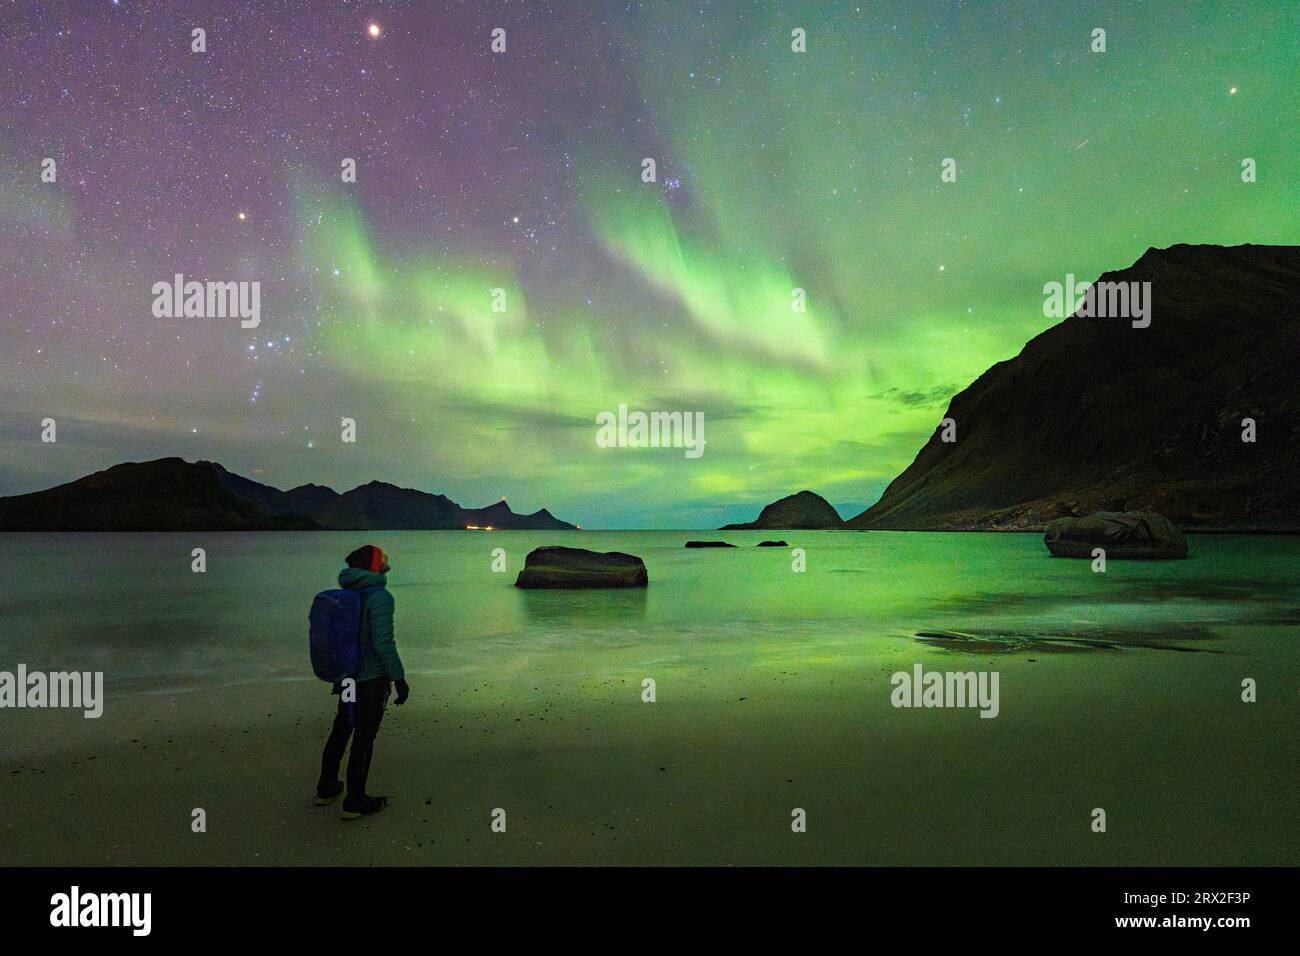 Hombre con mochila admirando las luces verdes brillantes de Aurora Borealis (auroras boreales) de la playa de Haukland, islas Lofoten, Nordland, Noruega Foto de stock